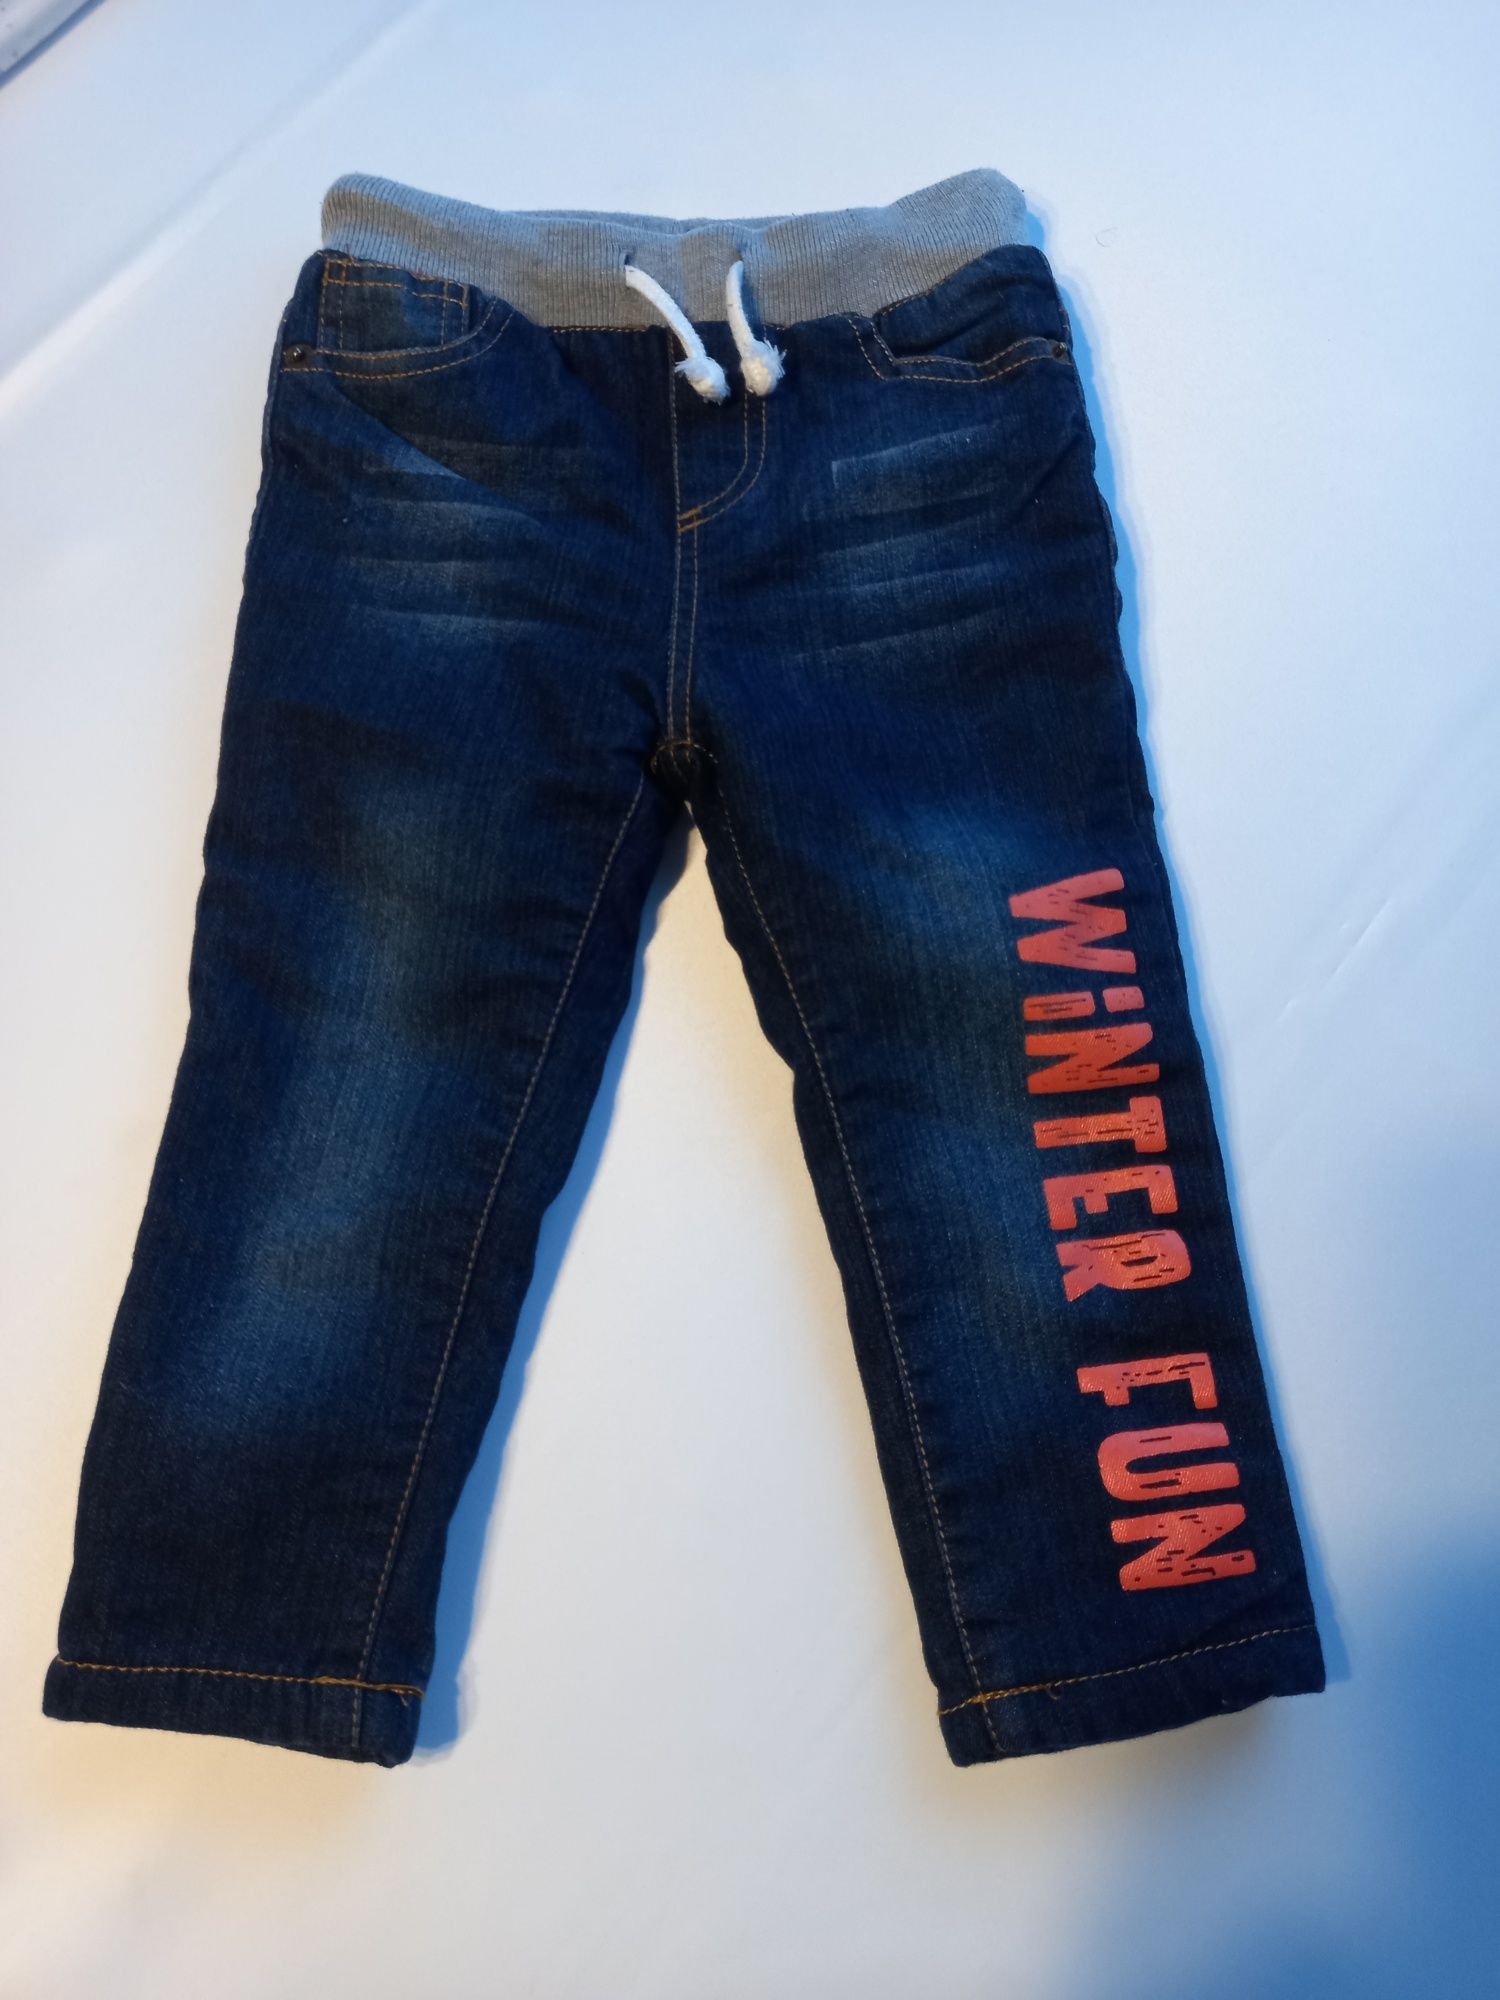 Spodnie chłopięce jeansowe ocieplane r. 92